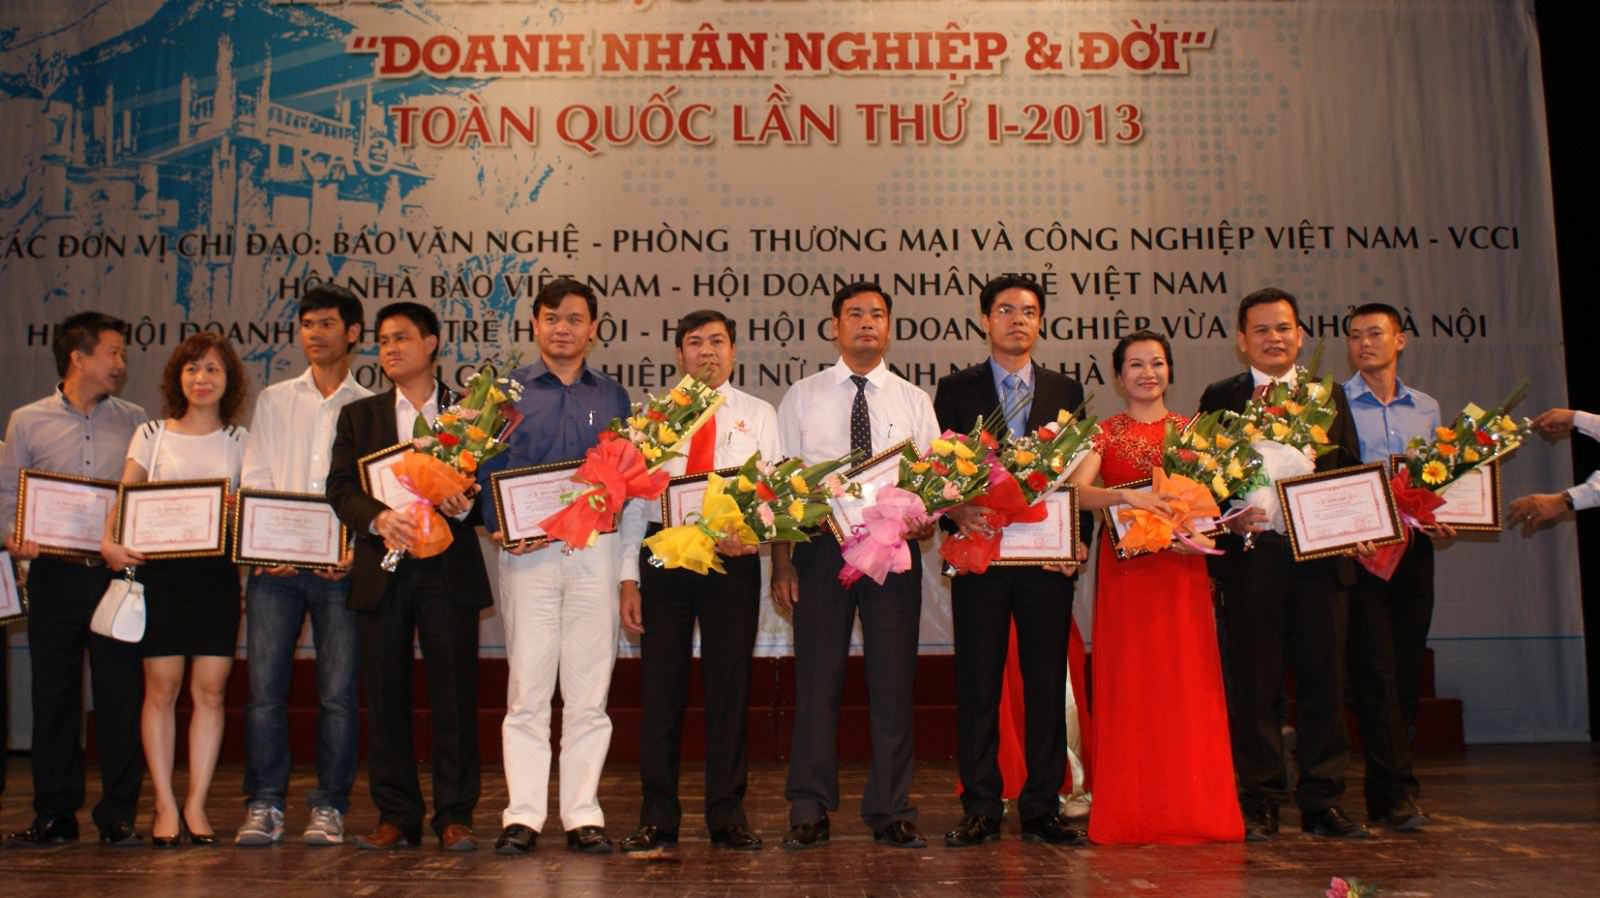 Chủ tịch Nguyễn Xuân Phú vinh dự nhận giải Doanh nhân xuất sắc” trong lễ trao giải “Doanh nhân- Nghiệp và đời” 4